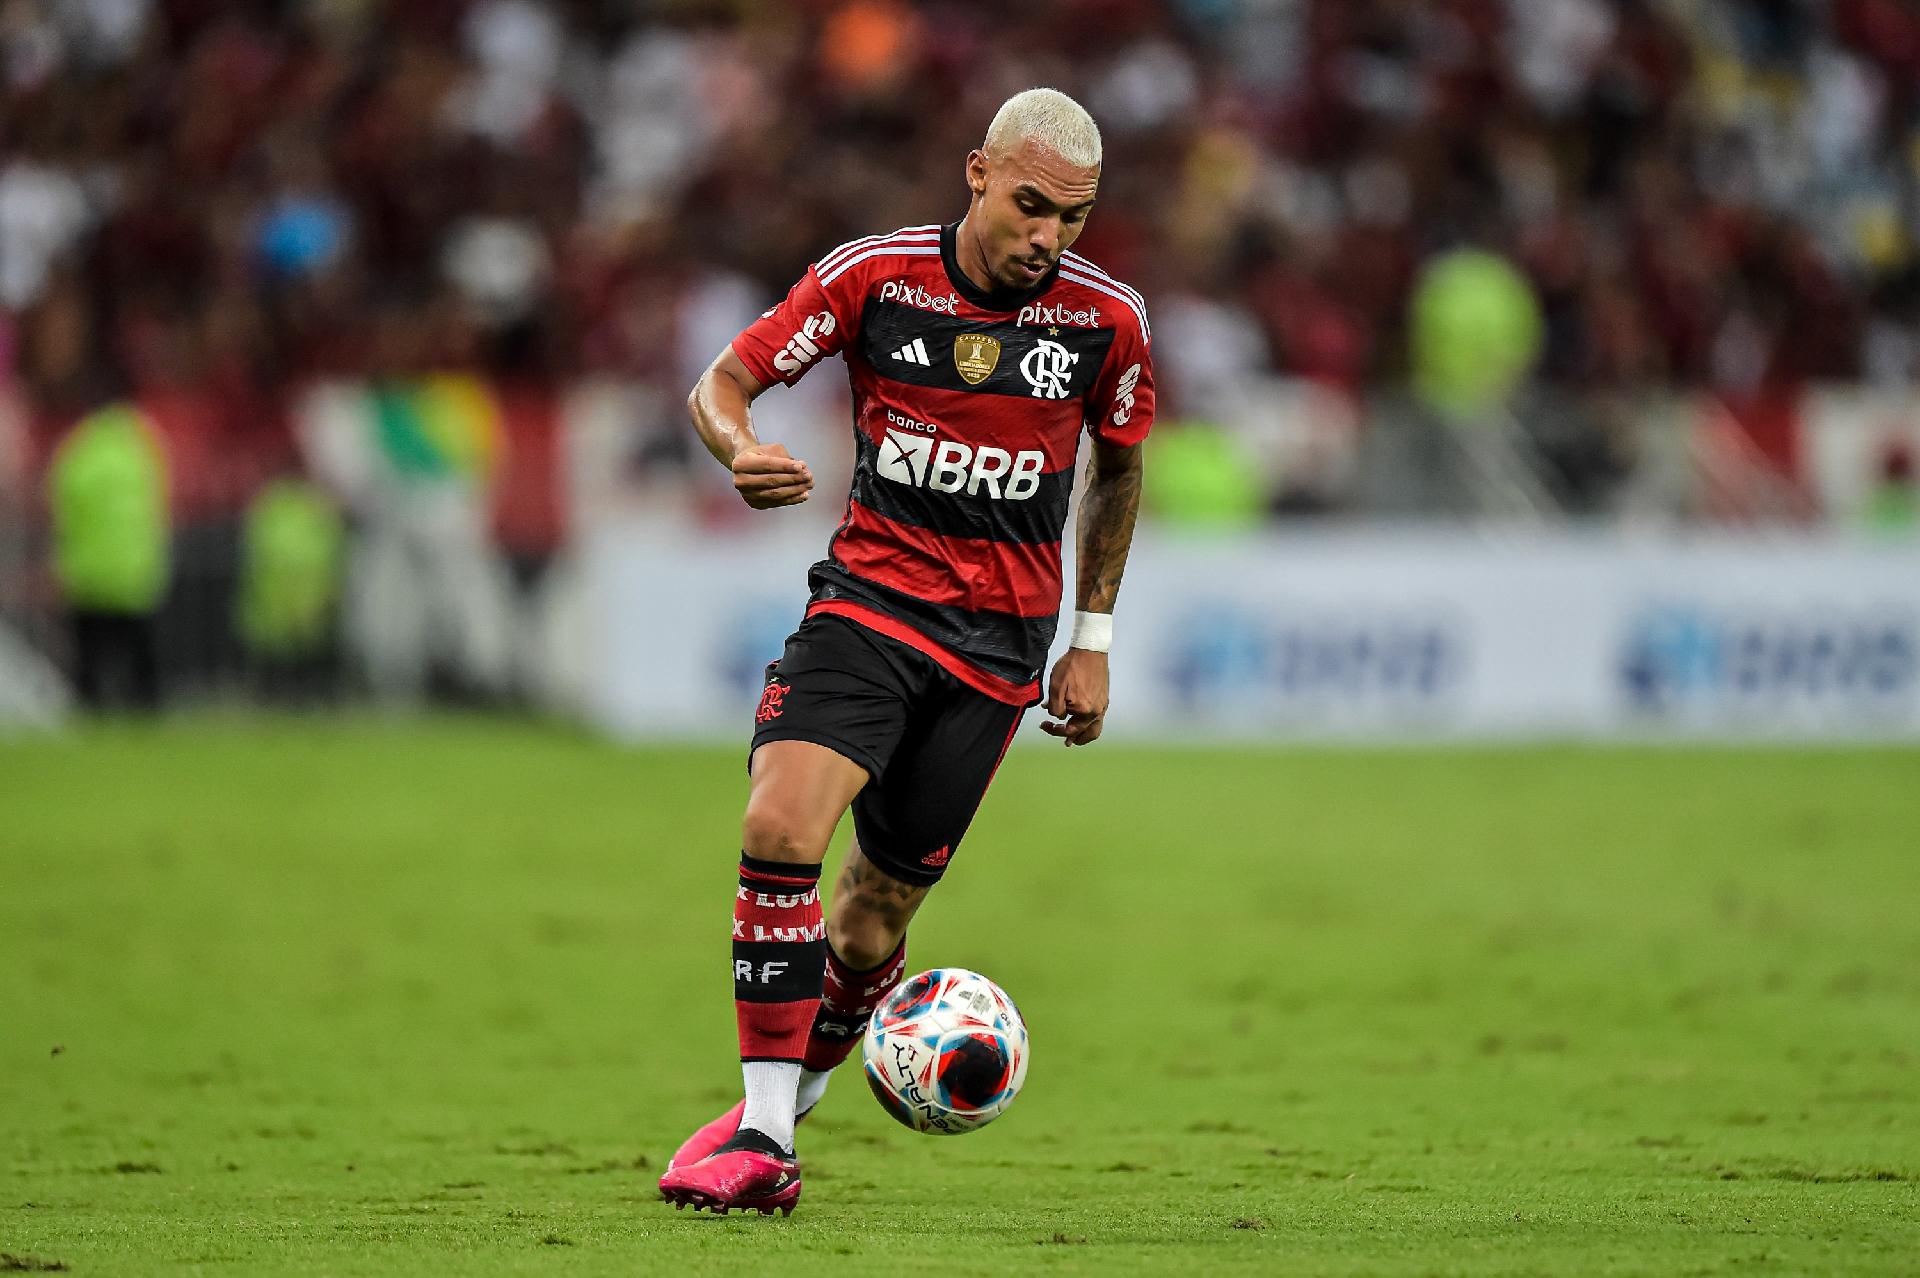 Wesley França - Lateral Direito - C. R. Flamengo - SUB20 